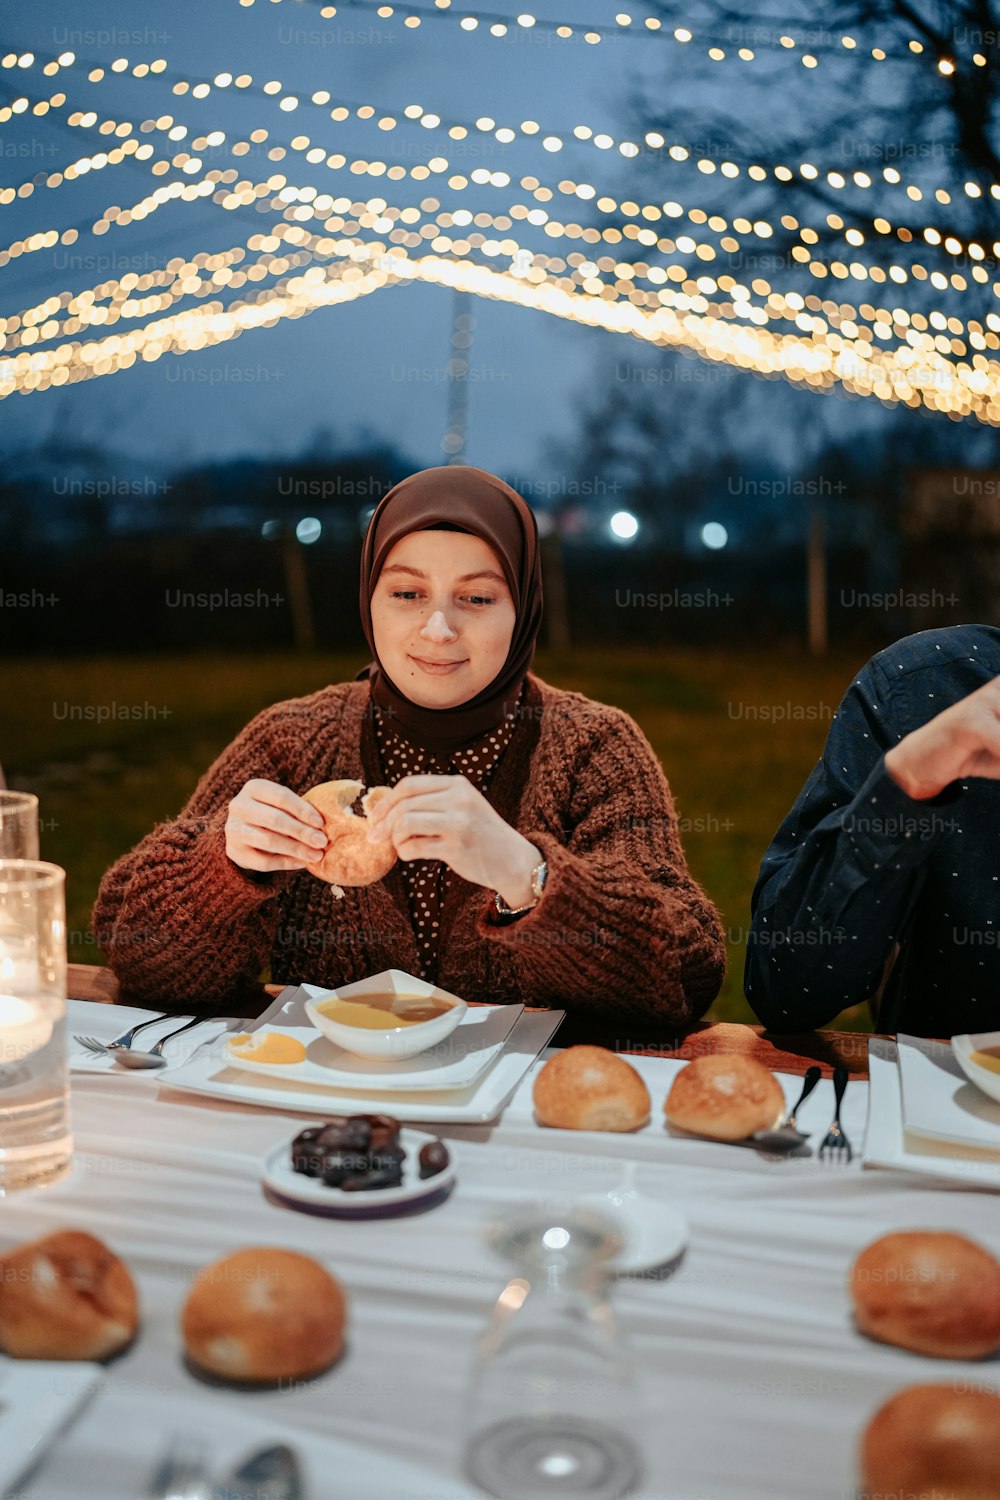 Eine Frau sitzt an einem Tisch und isst einen Bagel